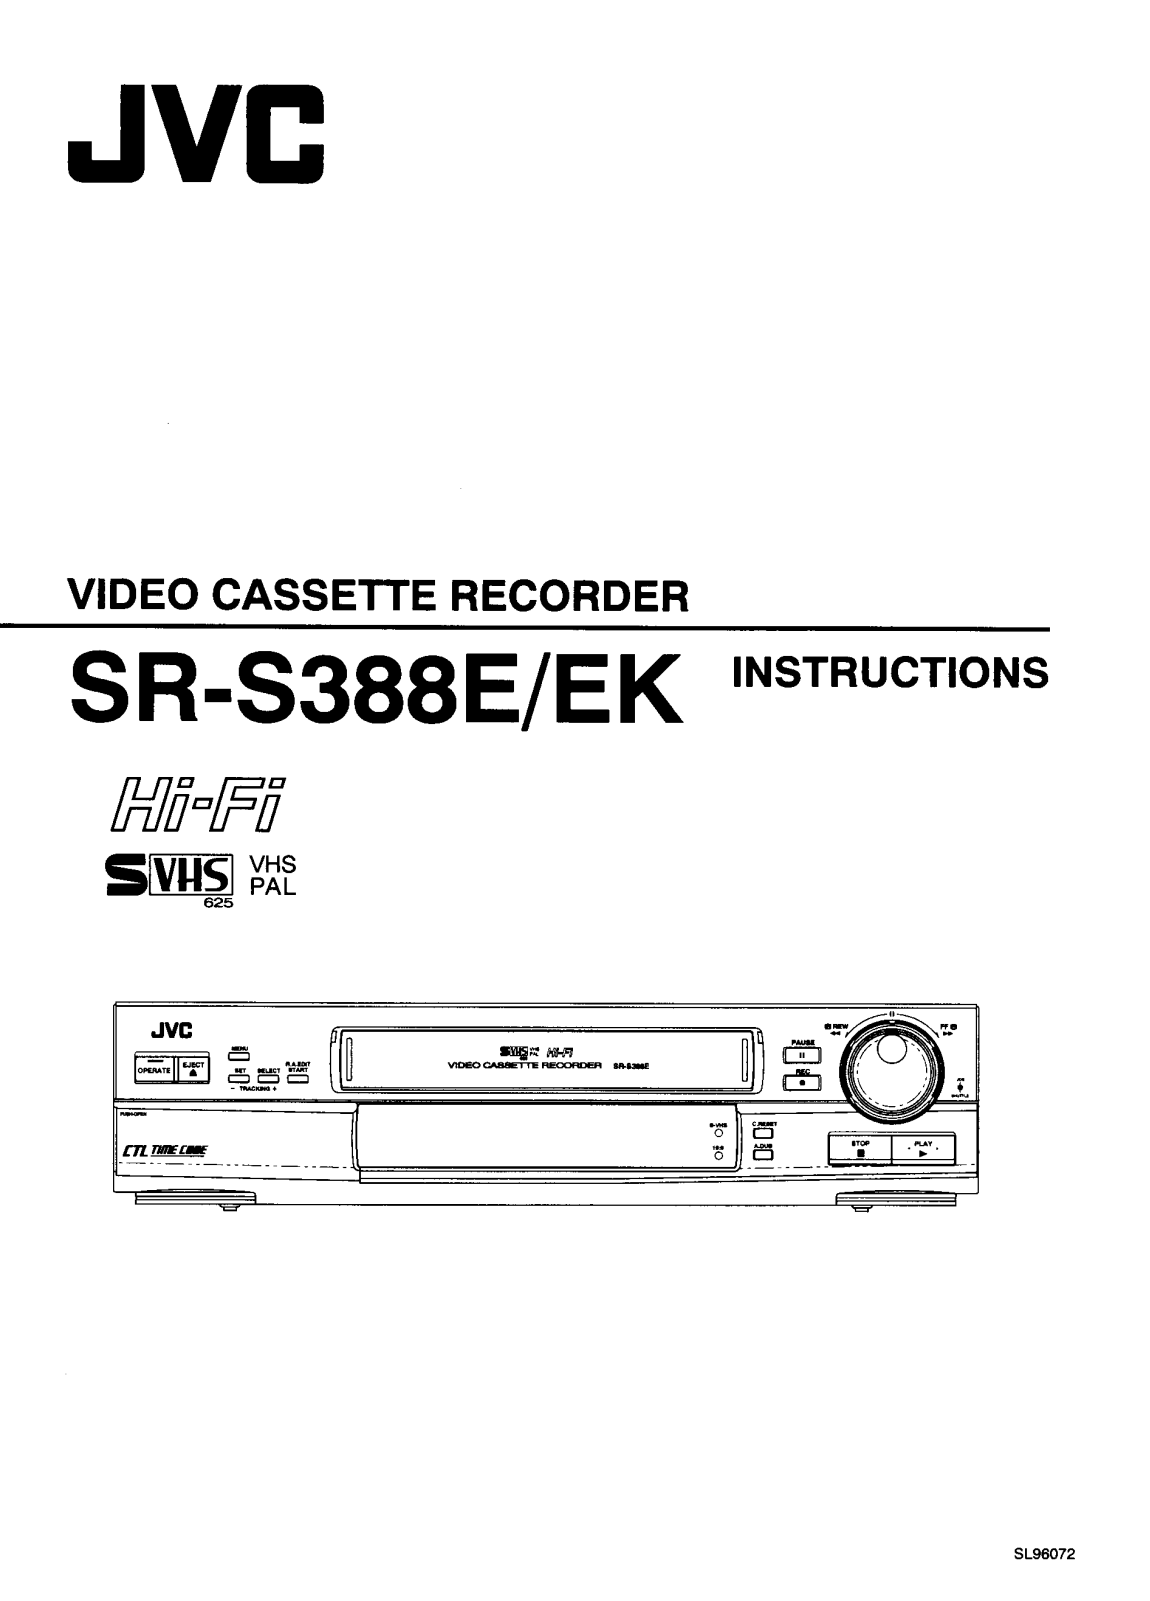 JVC SR-S388EK User Manual